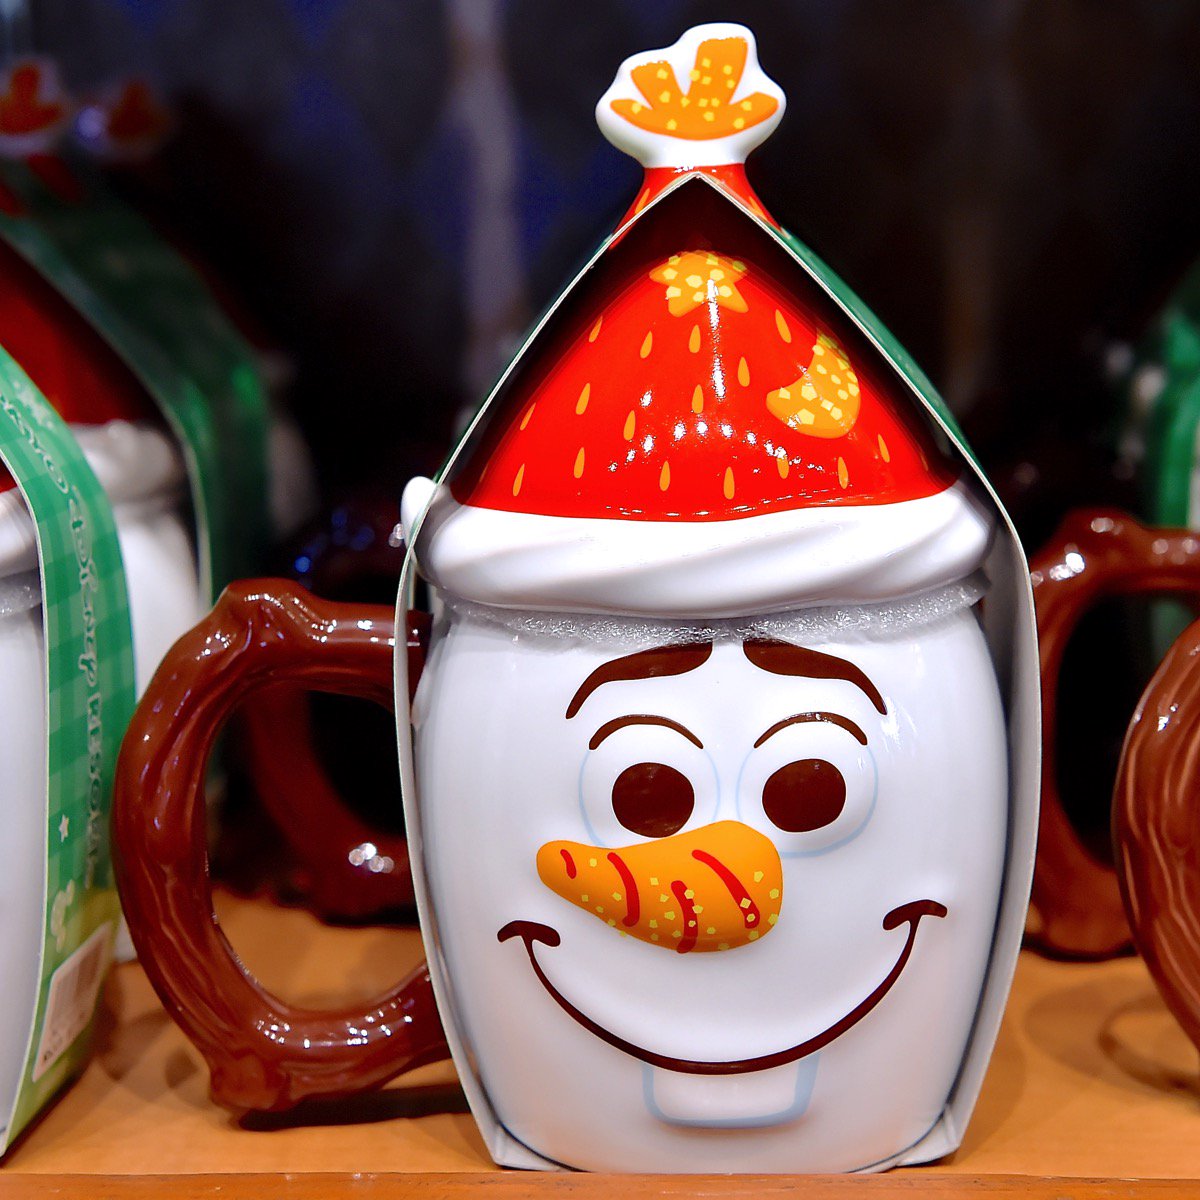 Mezzomikiのディズニーブログ 発売の遅れていたオラフの蓋付きマグカップも販売中です お菓子の世界のかわいいグッズ ディズニークリスマス15両パーク共通クリスマスグッズ T Co Zfl2jebhxj T Co Kffknbujew